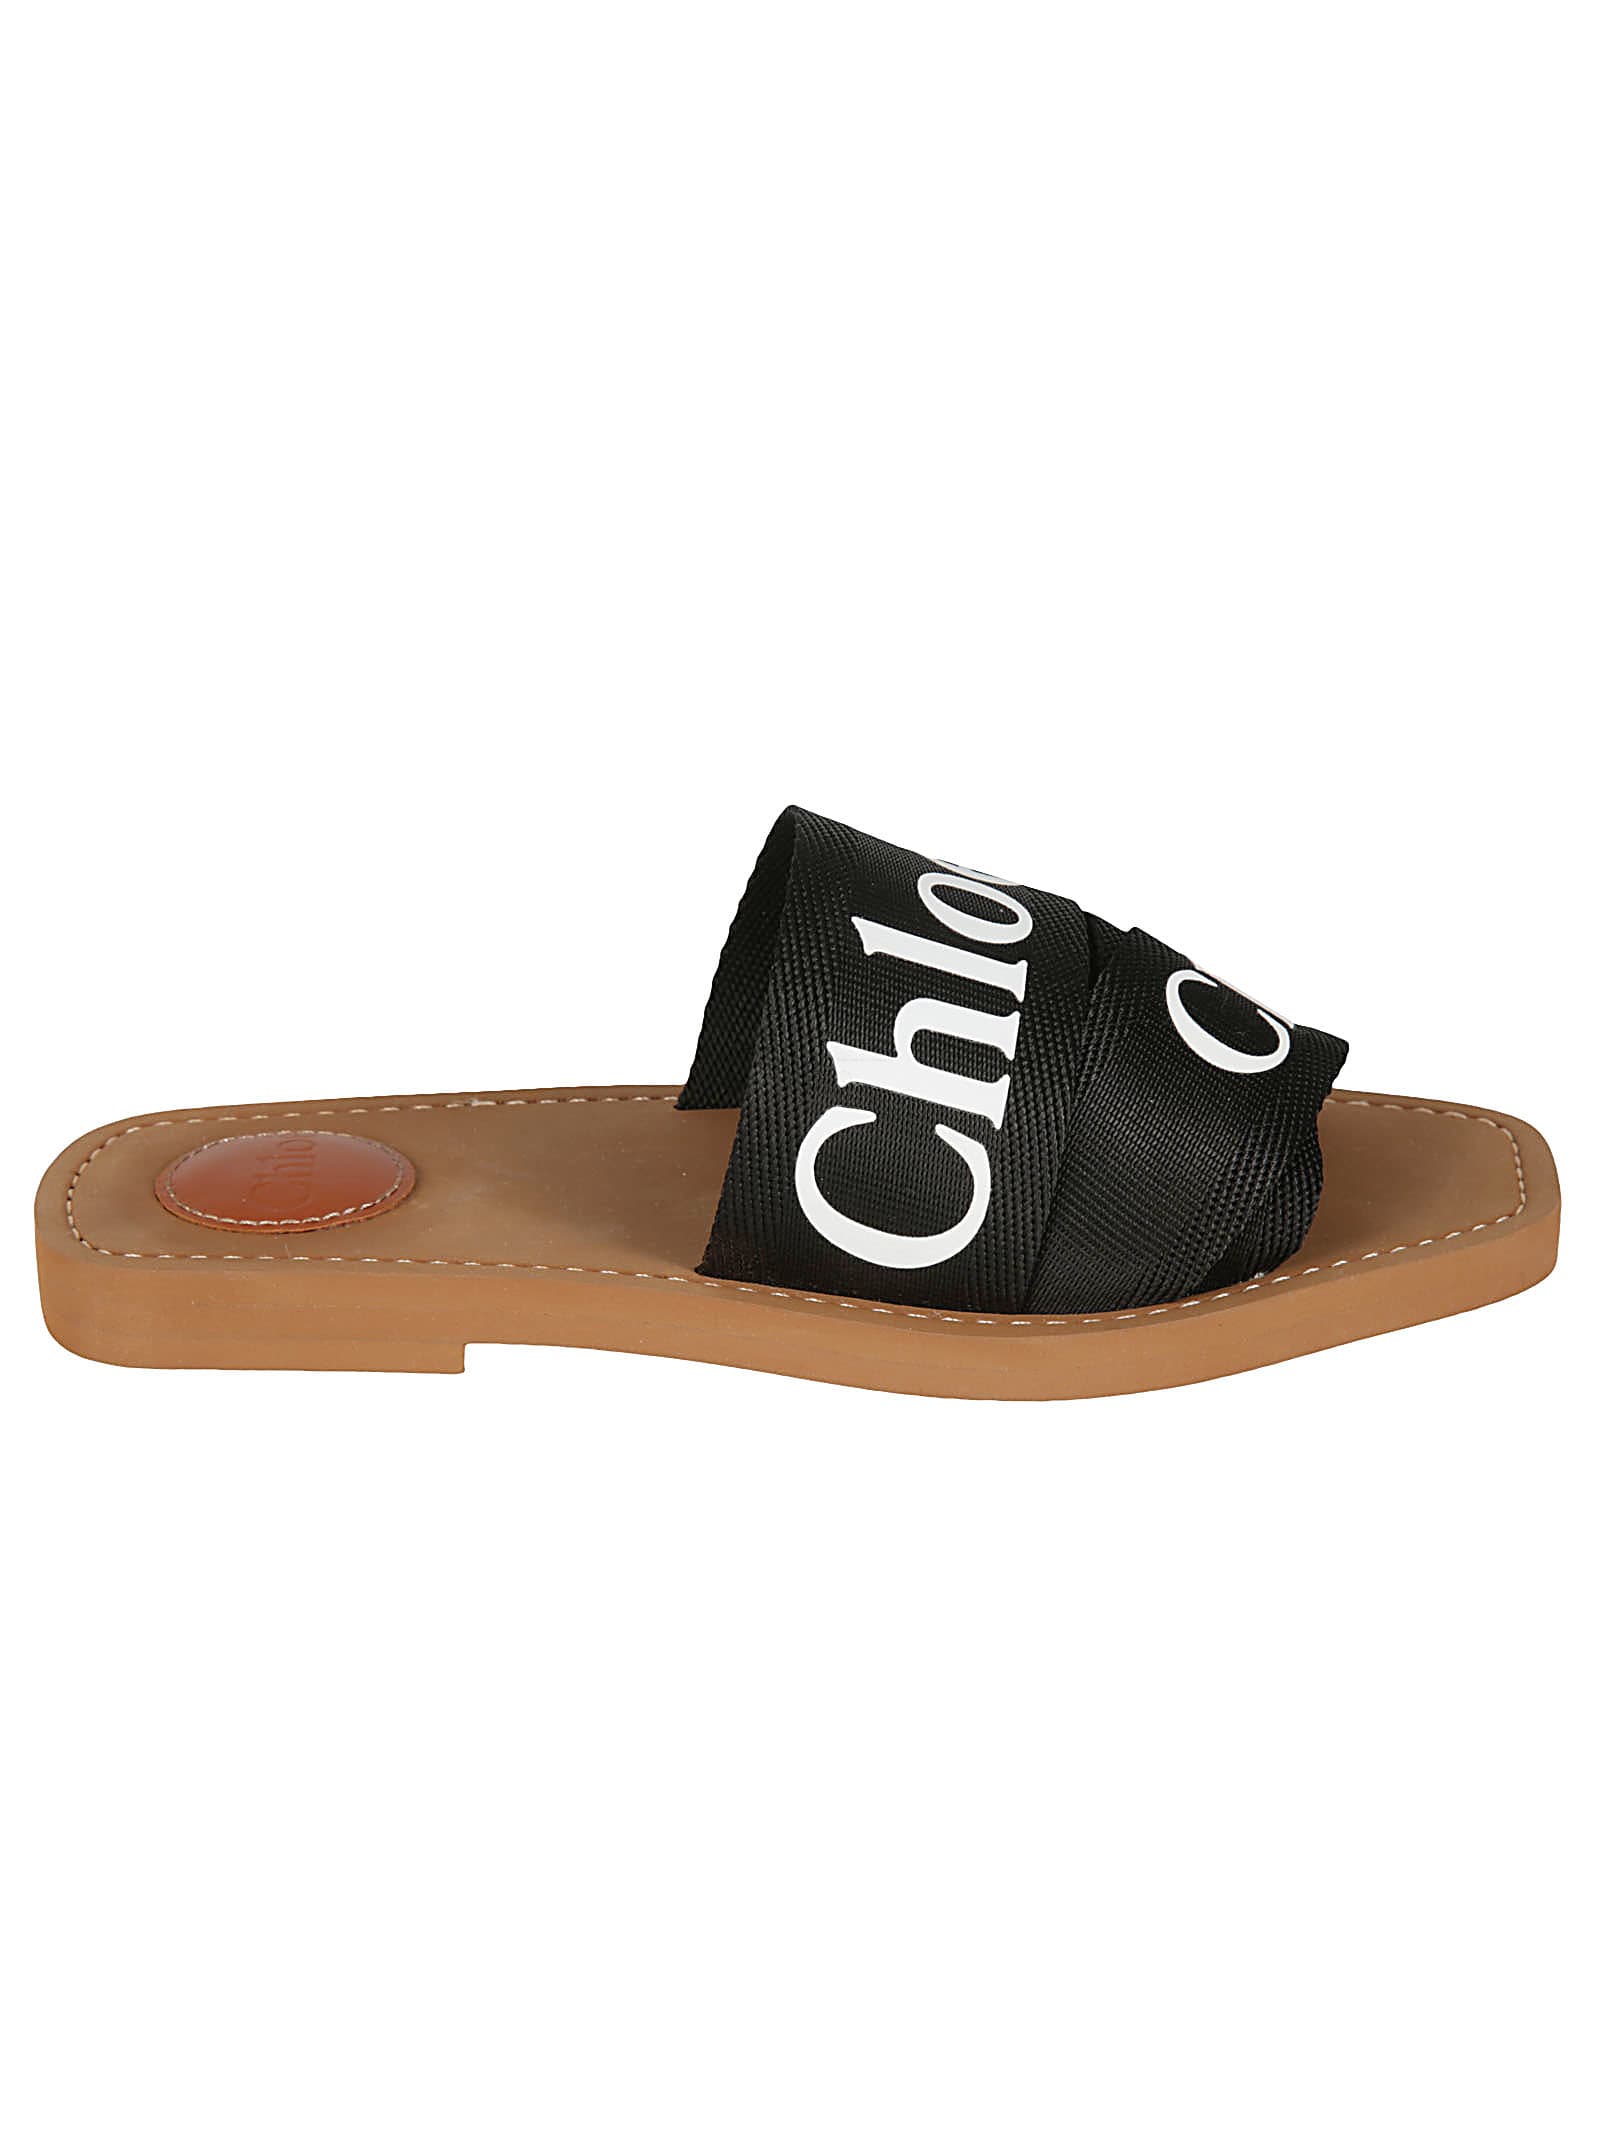 Chloé Logo Slippers In Black